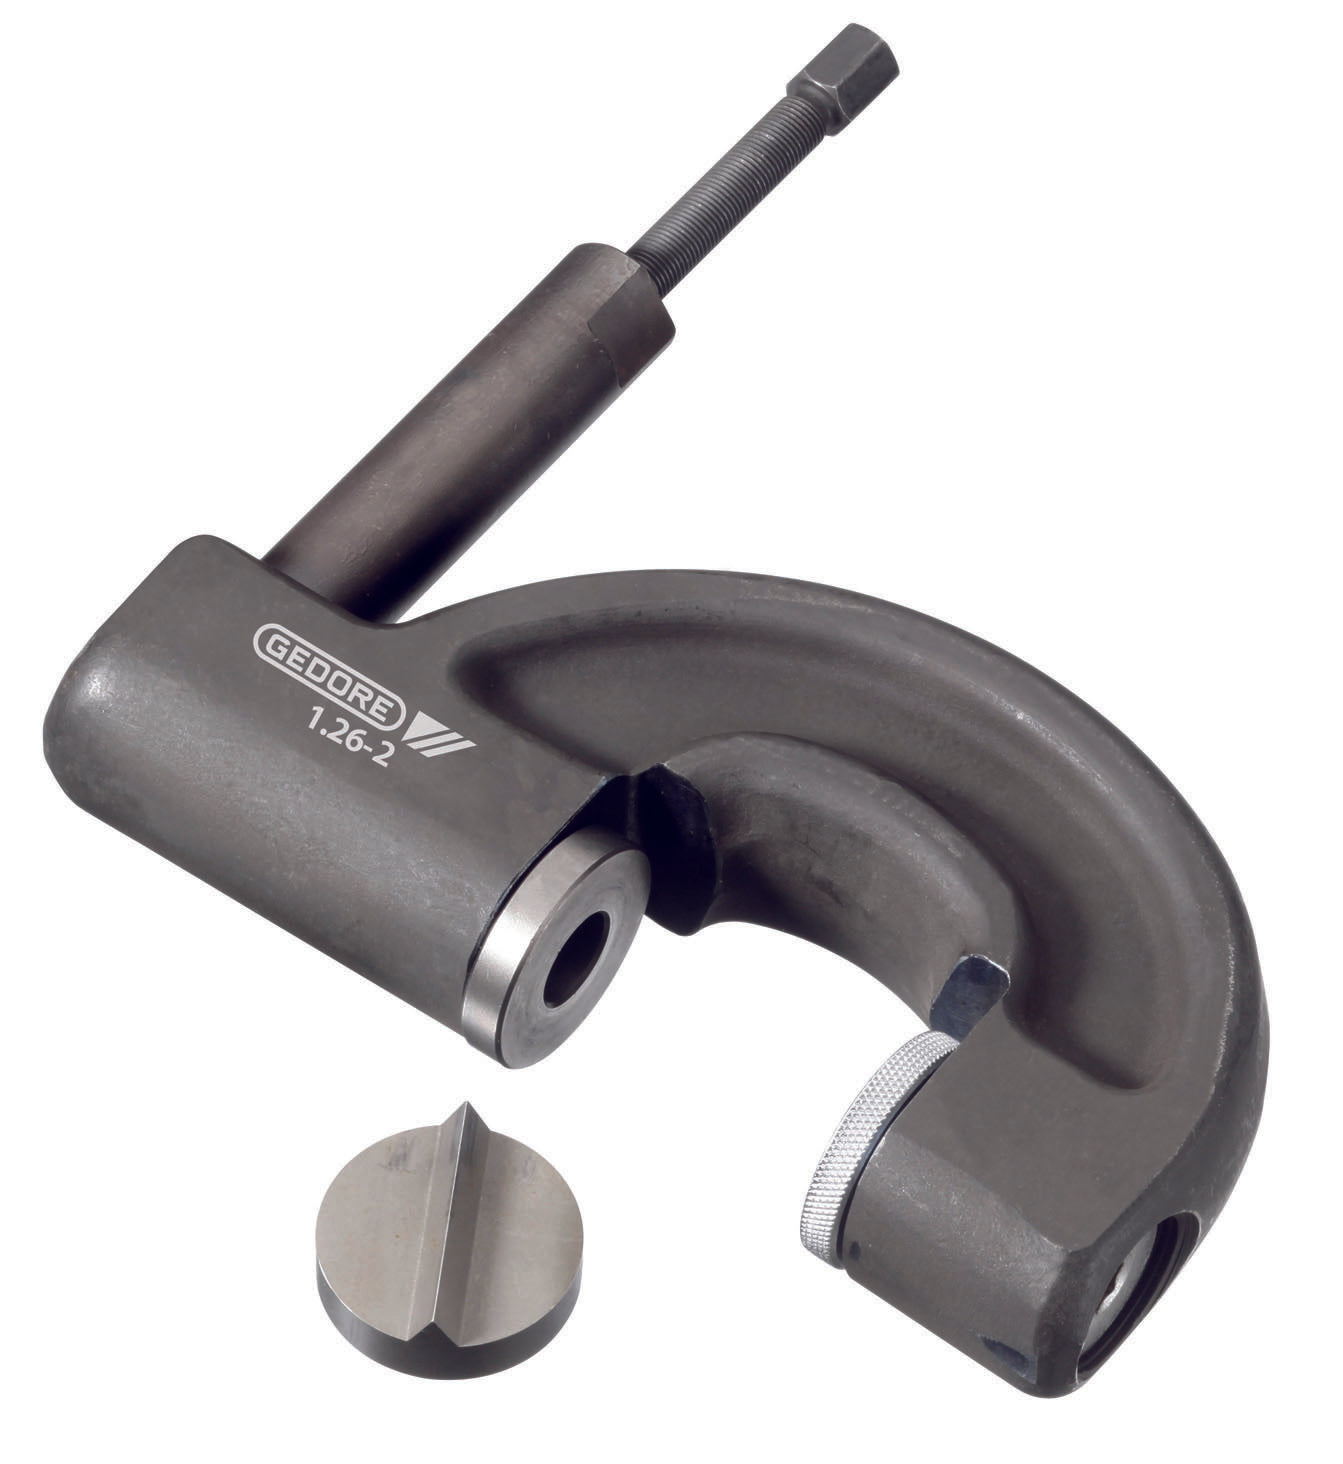 GEDORE 1.26/2 HYD - Hydraulic nut splitter 22-36mm (8009530)